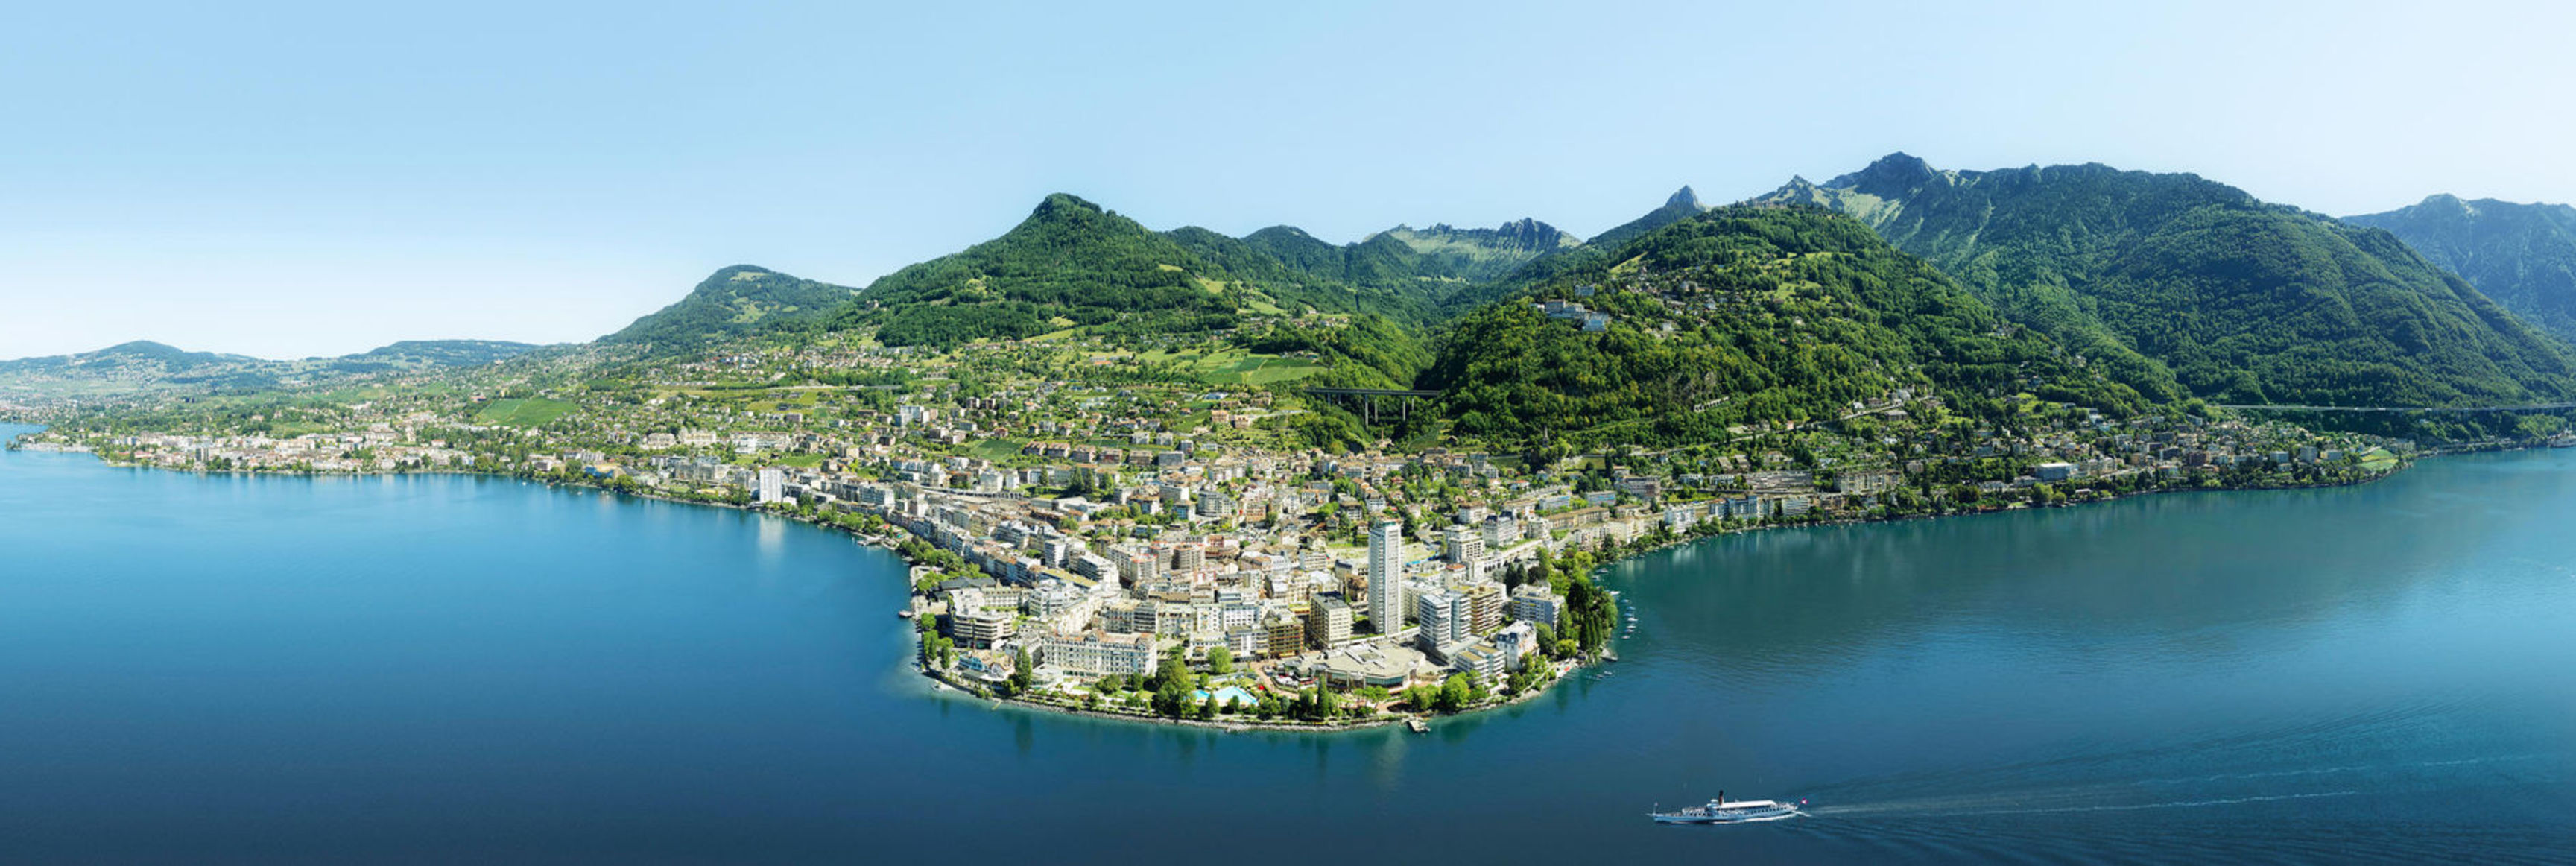 Montreux city